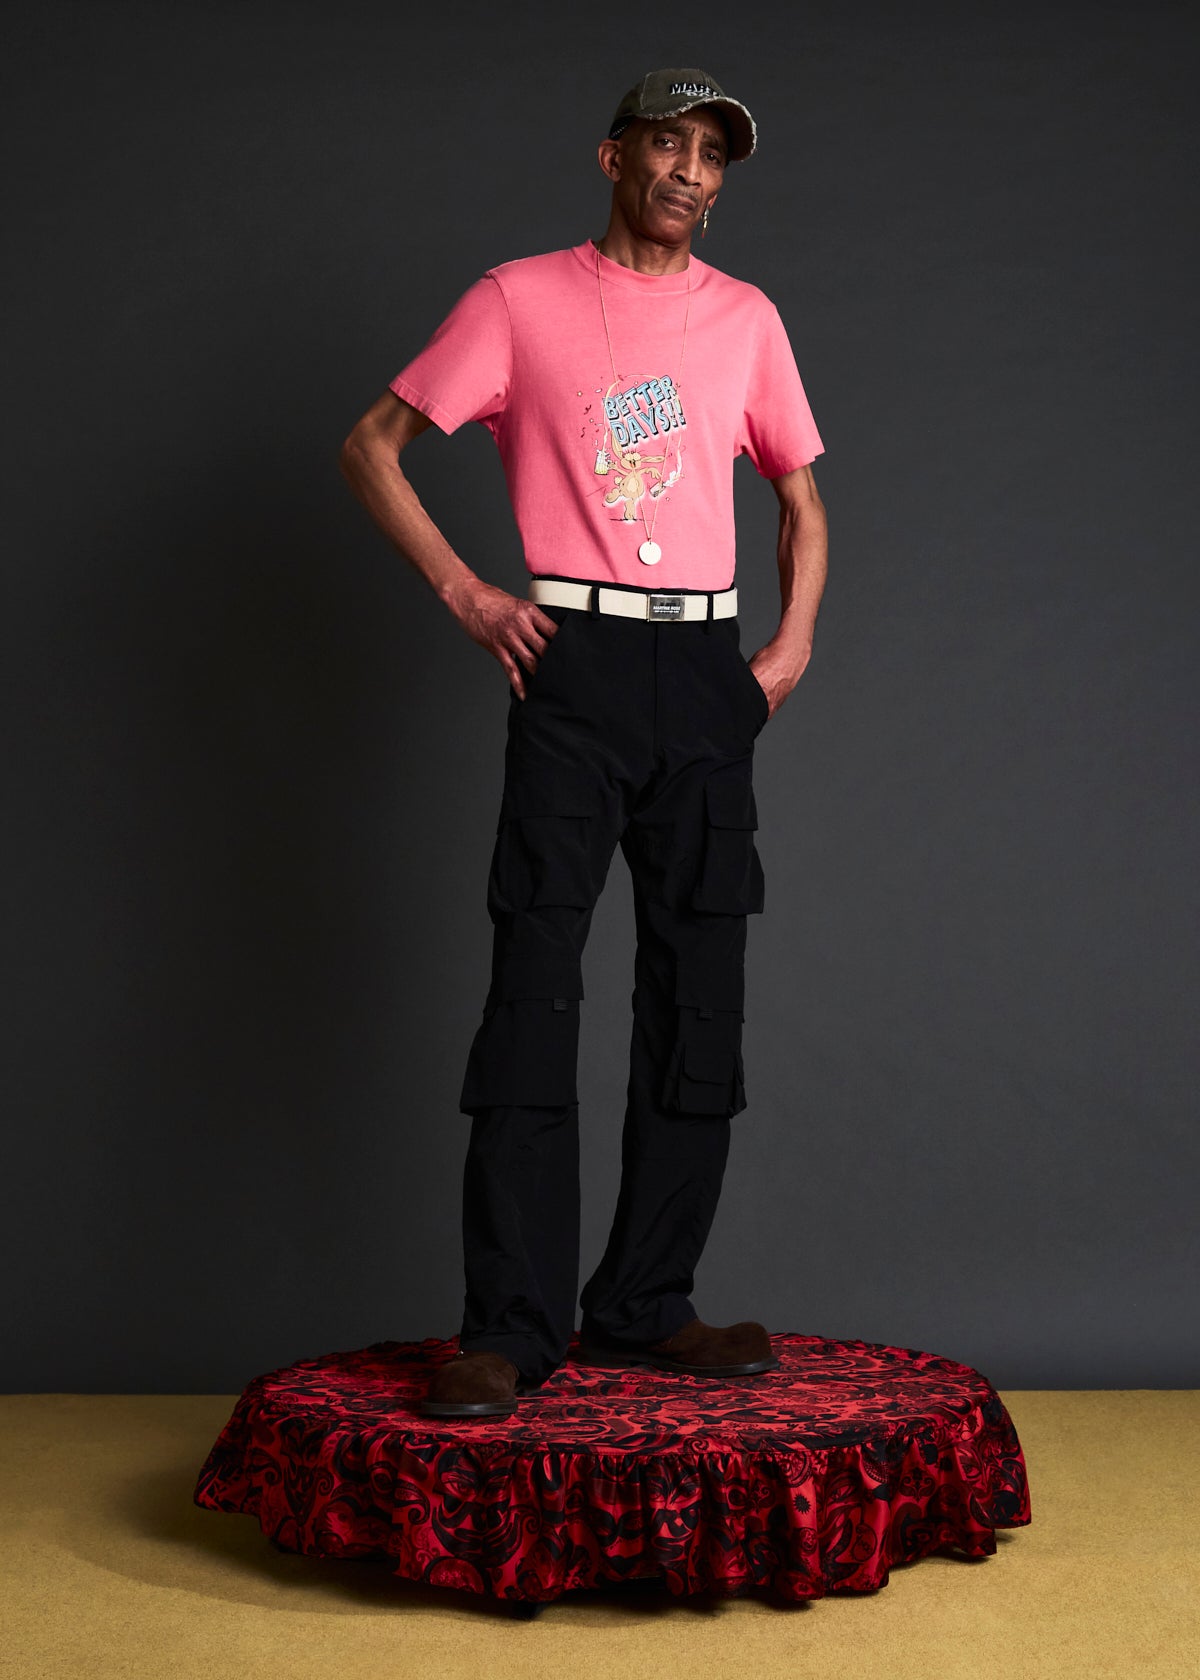 Oversized MARTINE ROSE T Shirt Men Women 1:1 High Quality T-Shirt Tops Tee  - AliExpress